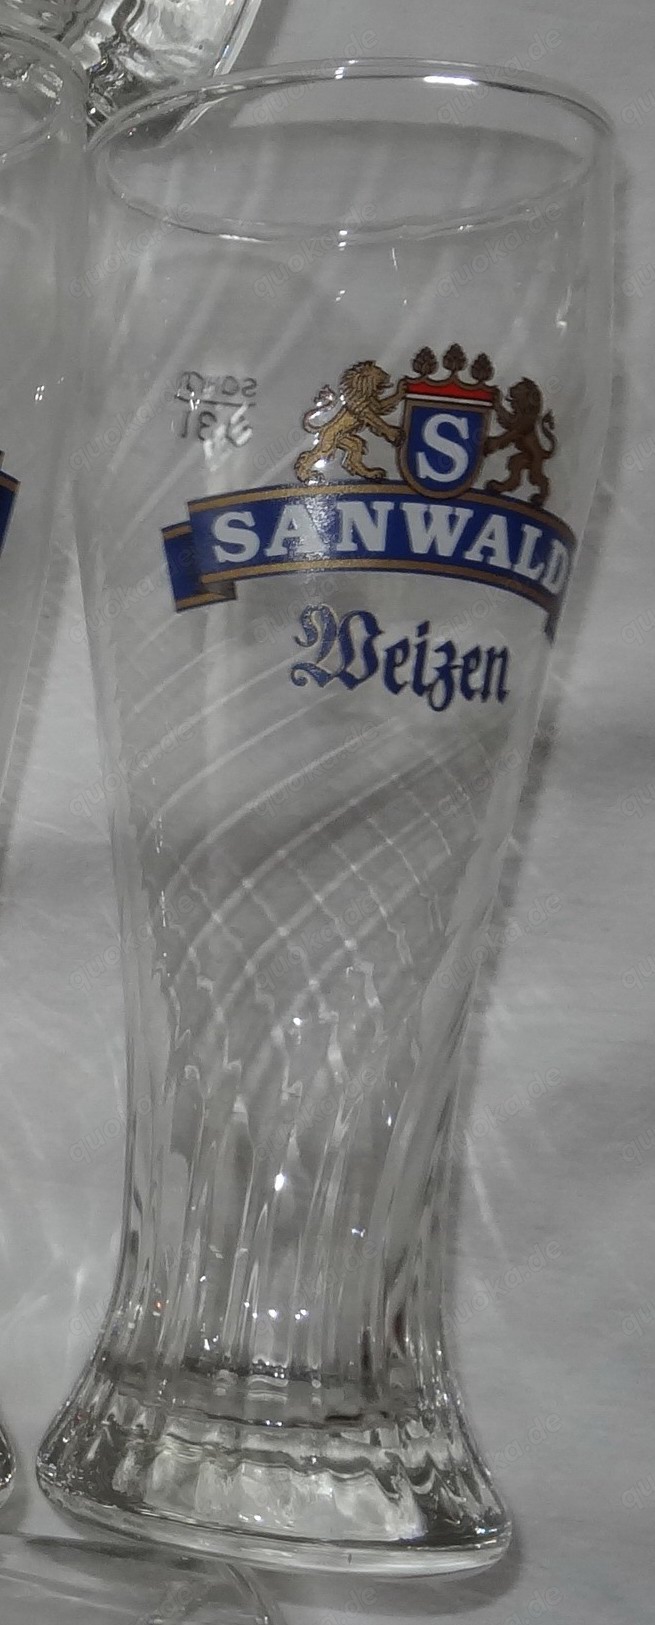 HF Sahm Weizenbierglas Achensee 0,3 Sanwald Weizen kaum benutzt sehr gut erhalten Glas Trinkglas Bie